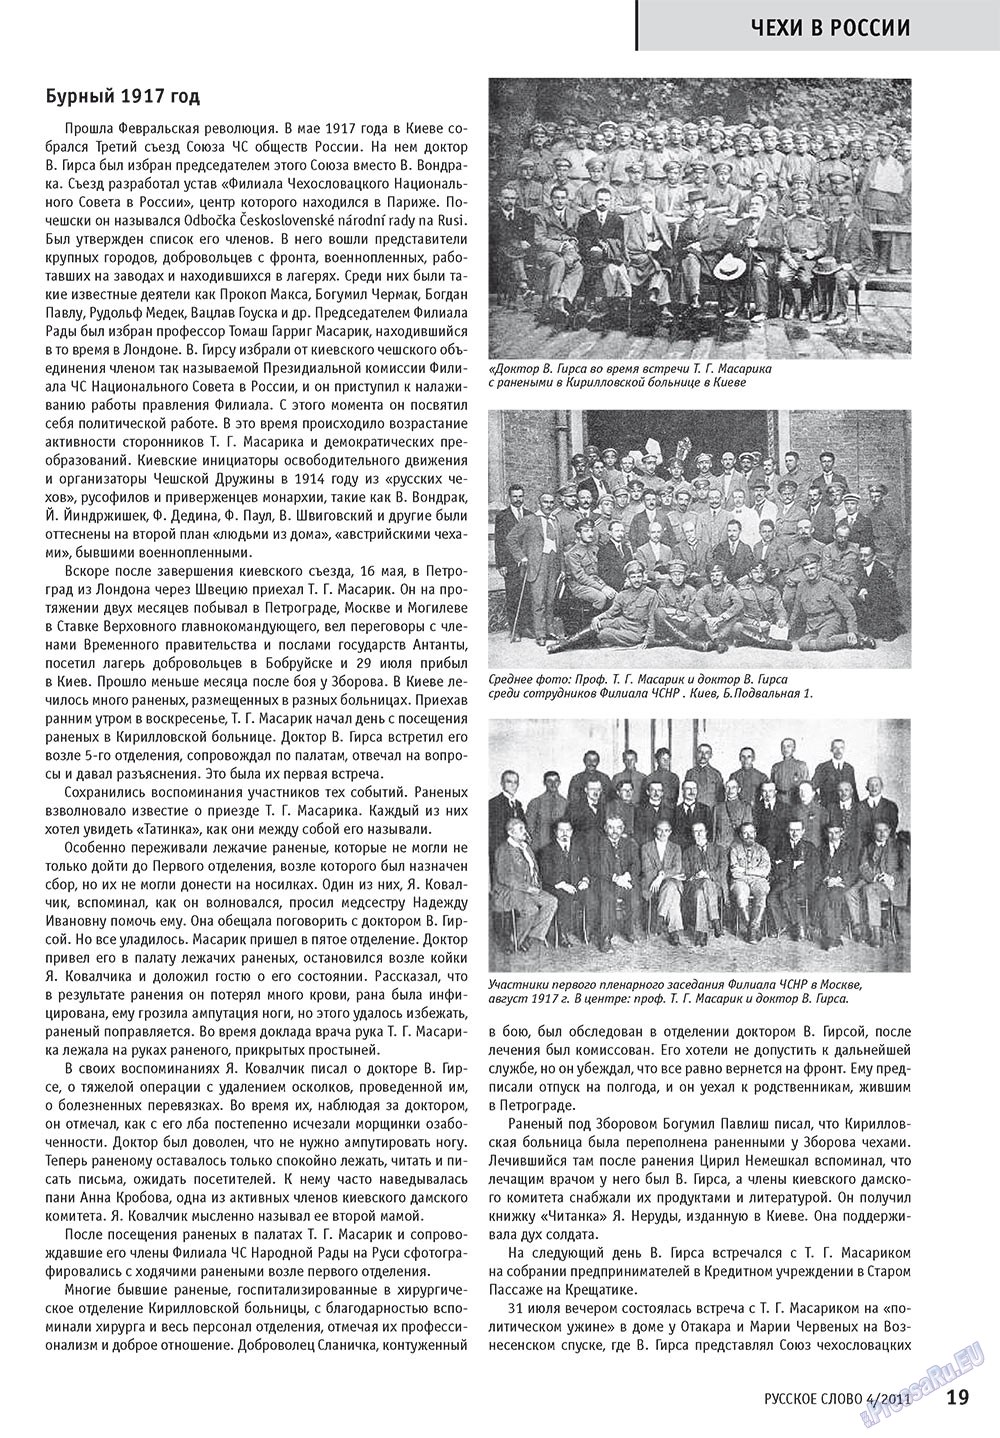 Русское слово, журнал. 2011 №4 стр.21